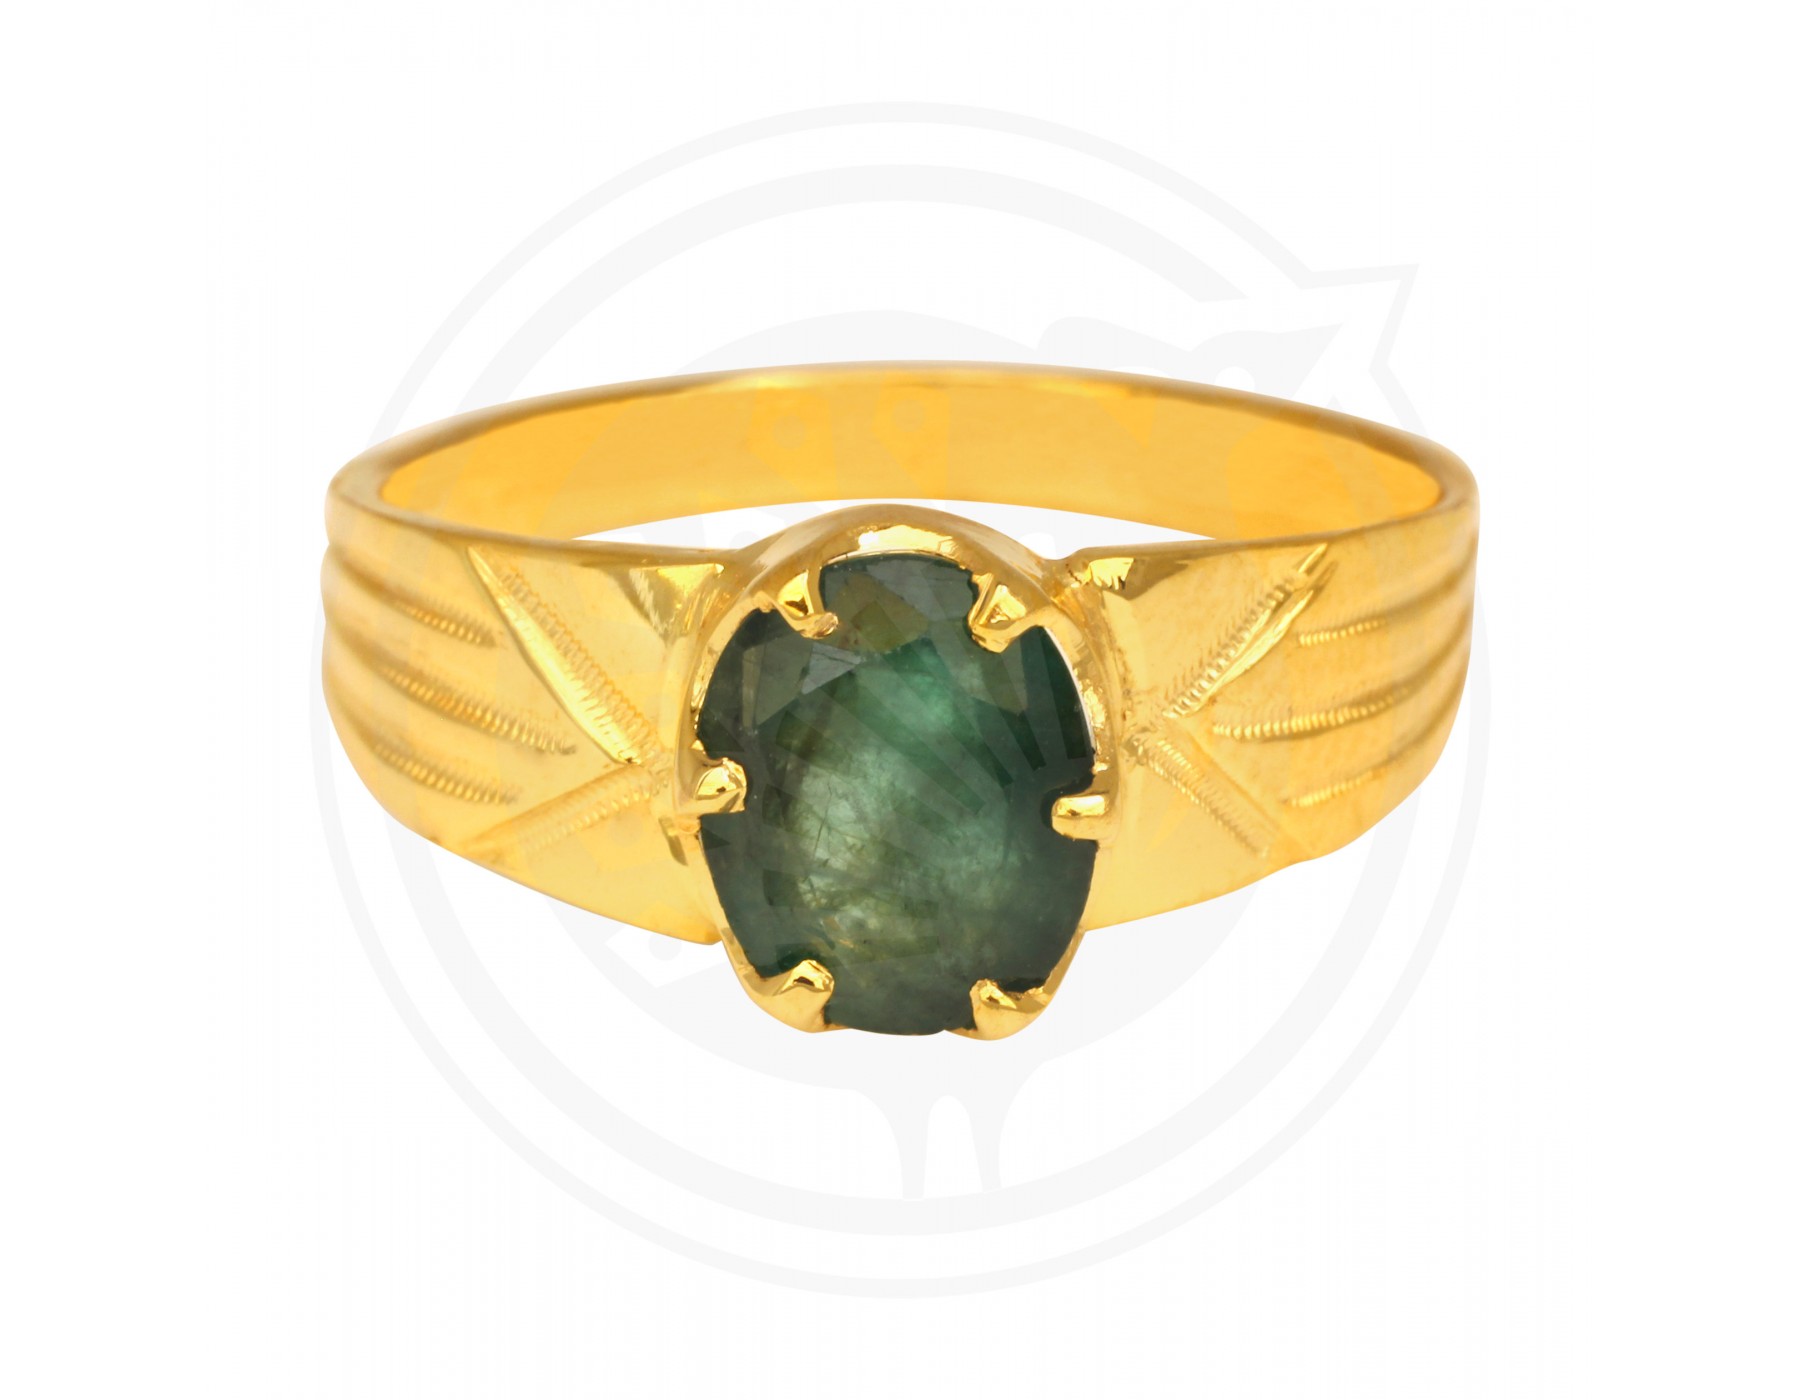 TUMBLED STONE RING Big Crystal Ring Natural Stone Rings - Etsy | Stone rings  natural, Hippie gemstones, Silver amethyst